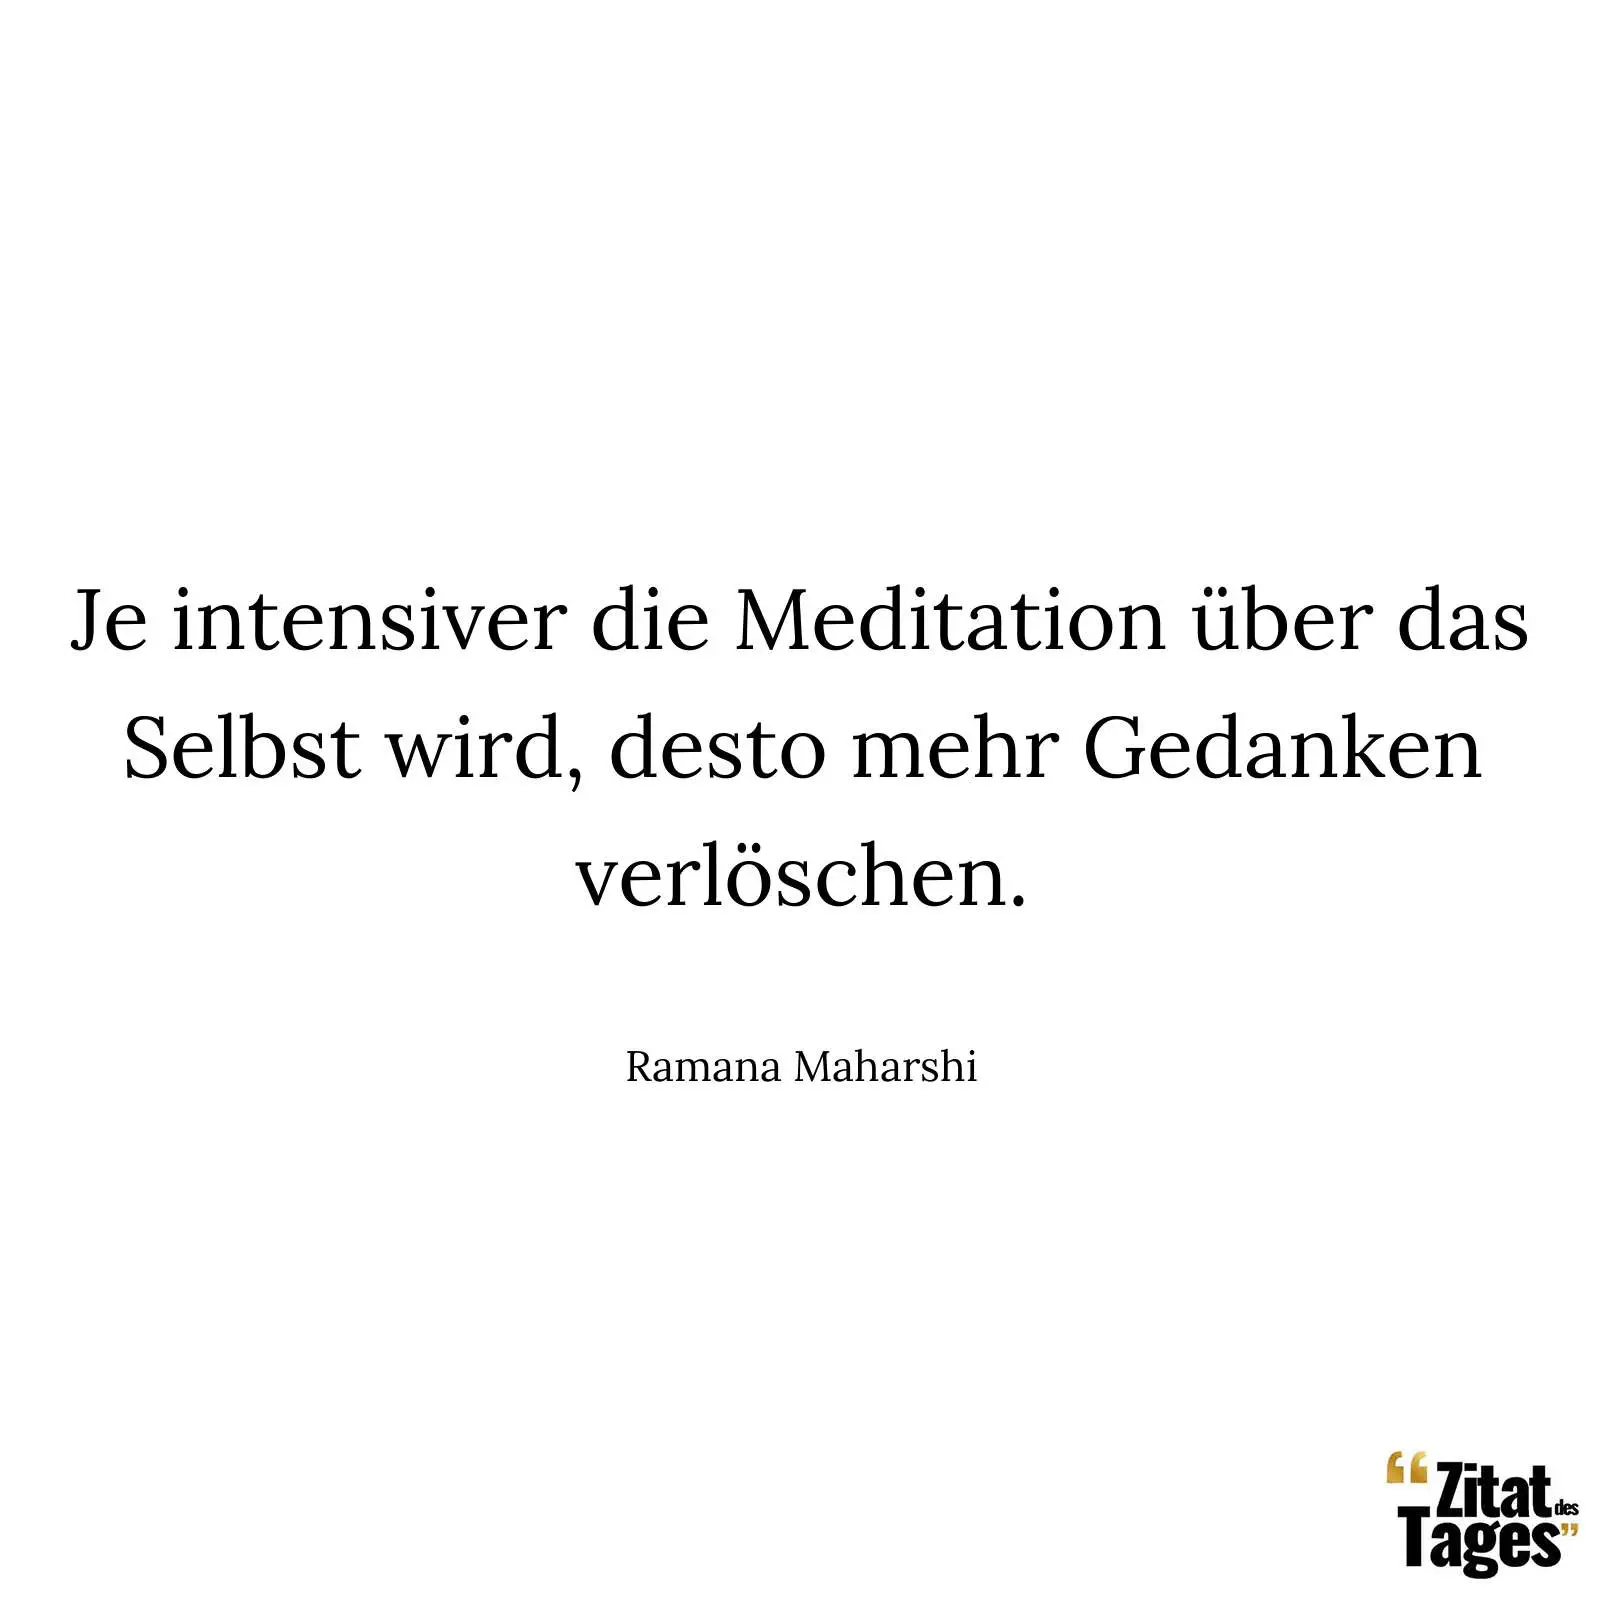 Je intensiver die Meditation über das Selbst wird, desto mehr Gedanken verlöschen. - Ramana Maharshi